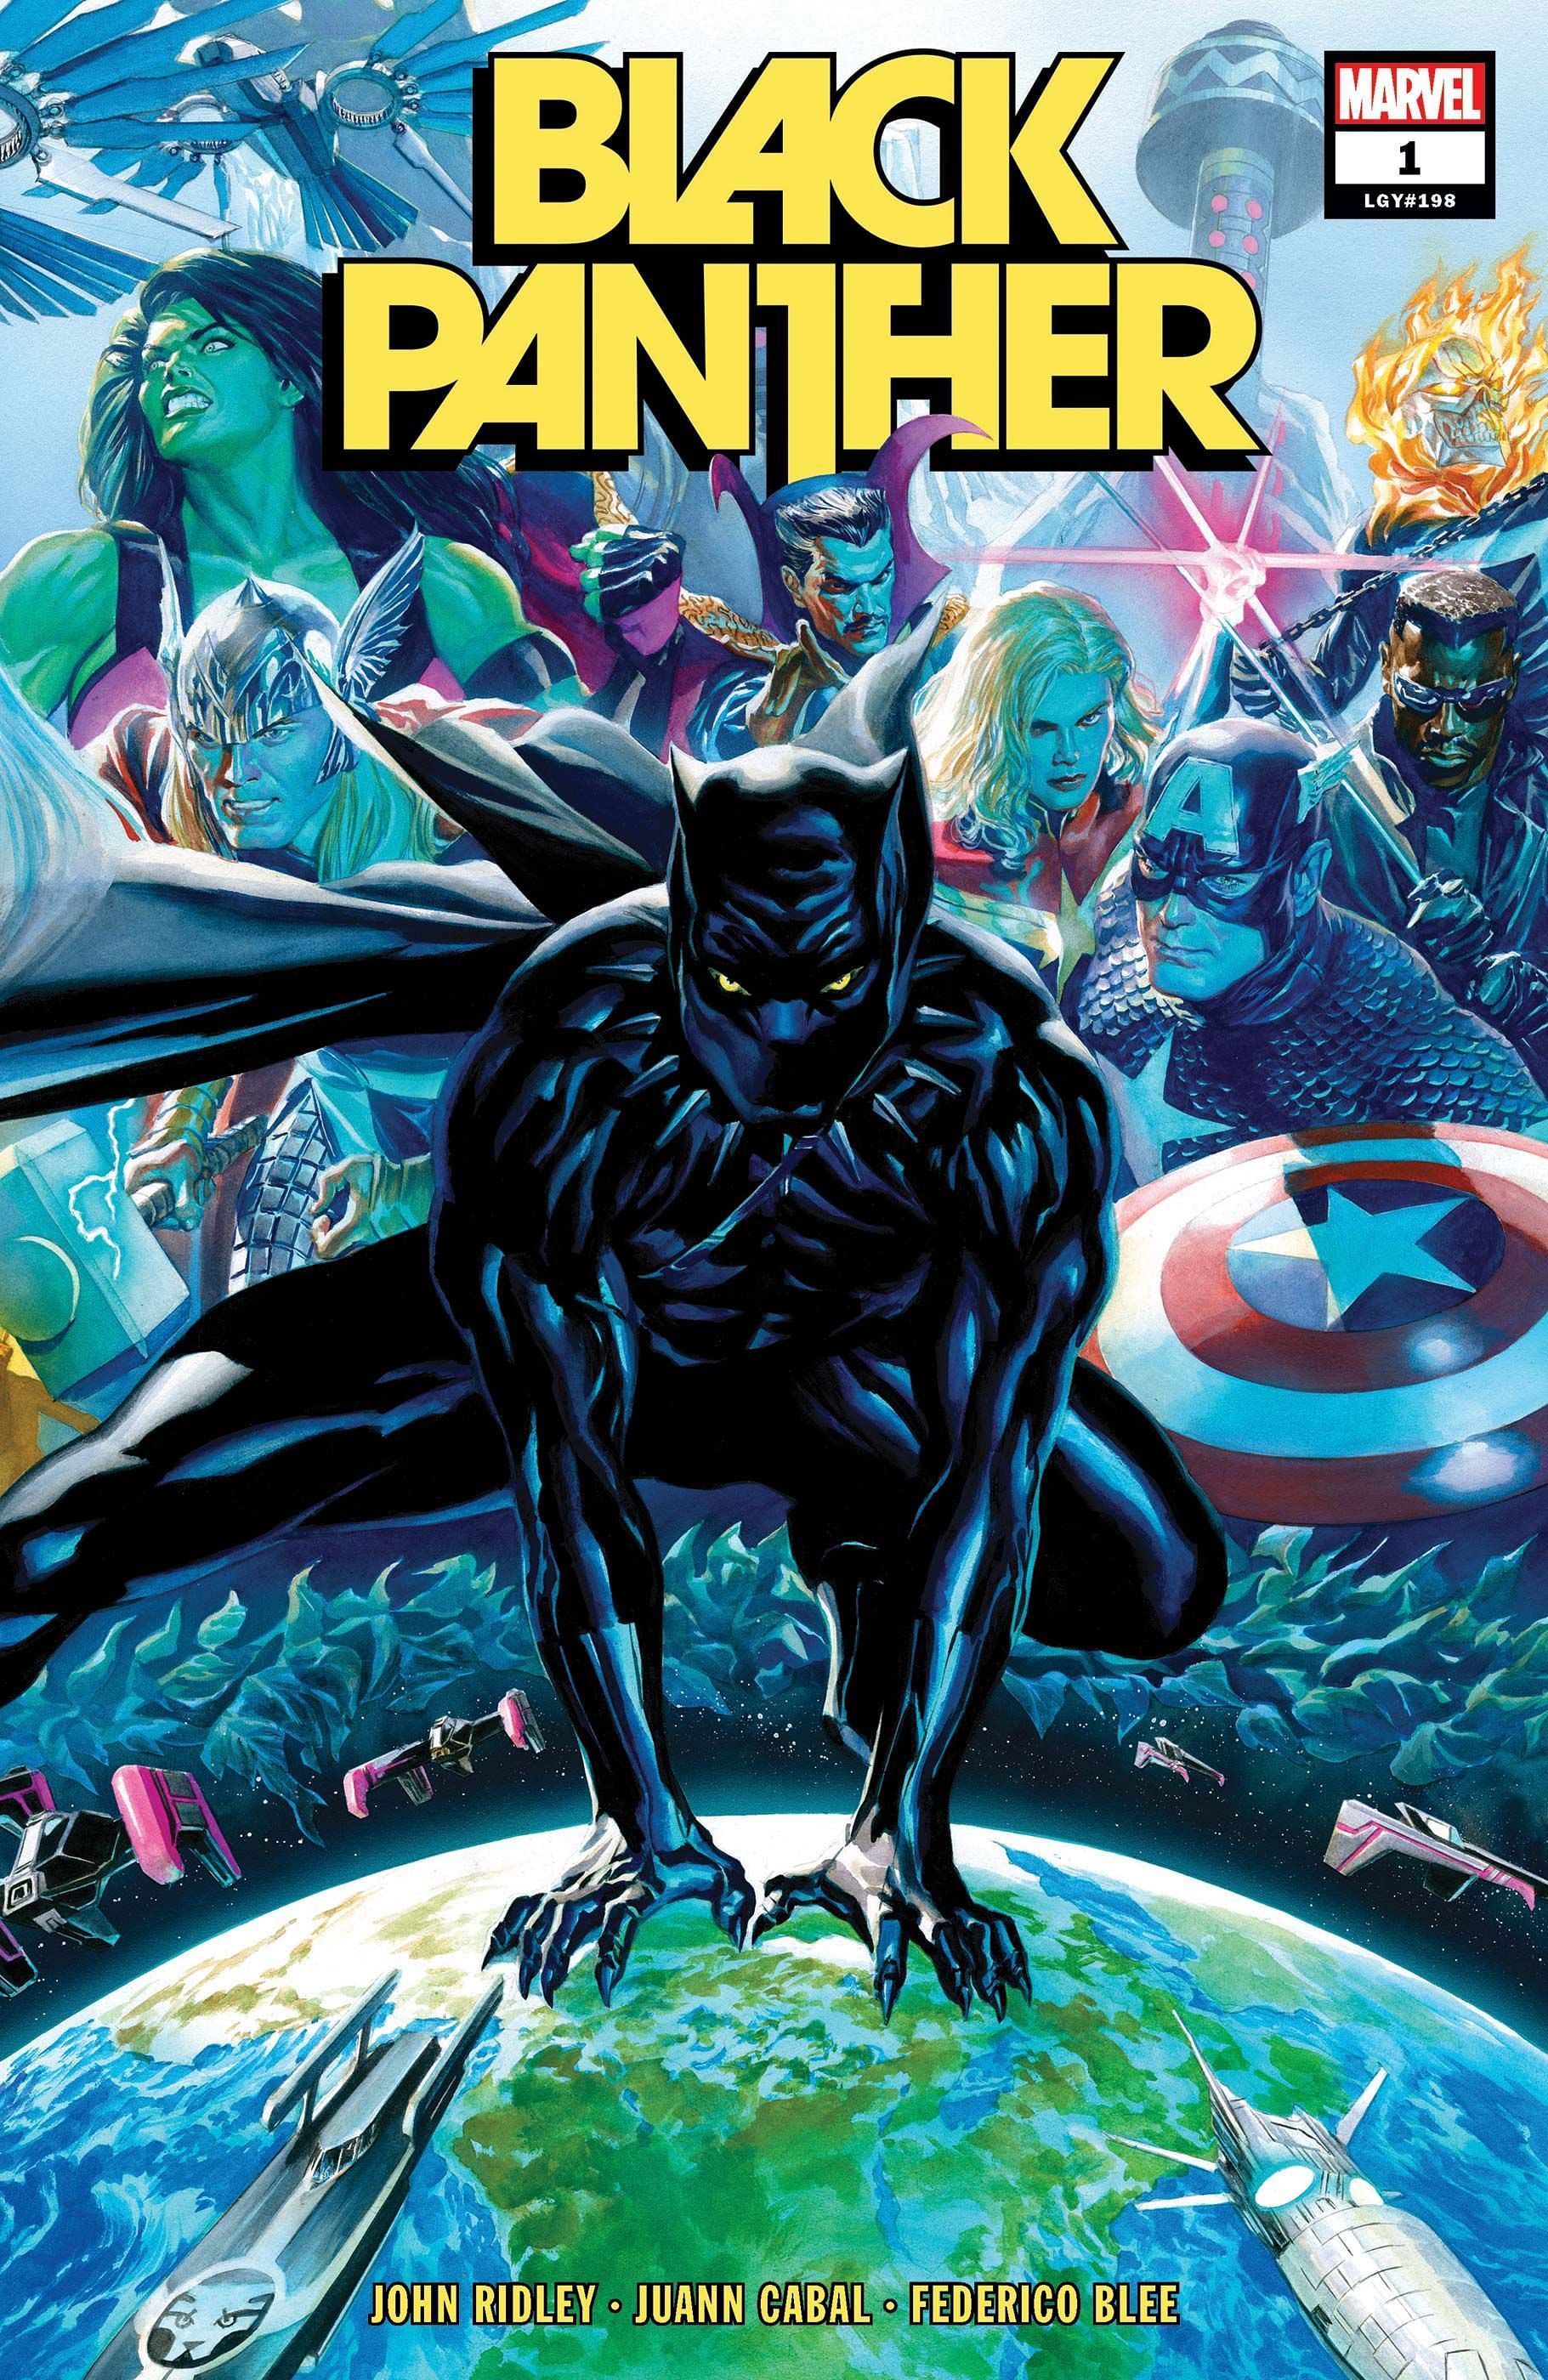 Marvel&#039;s Black Panther (Image via Marvel)